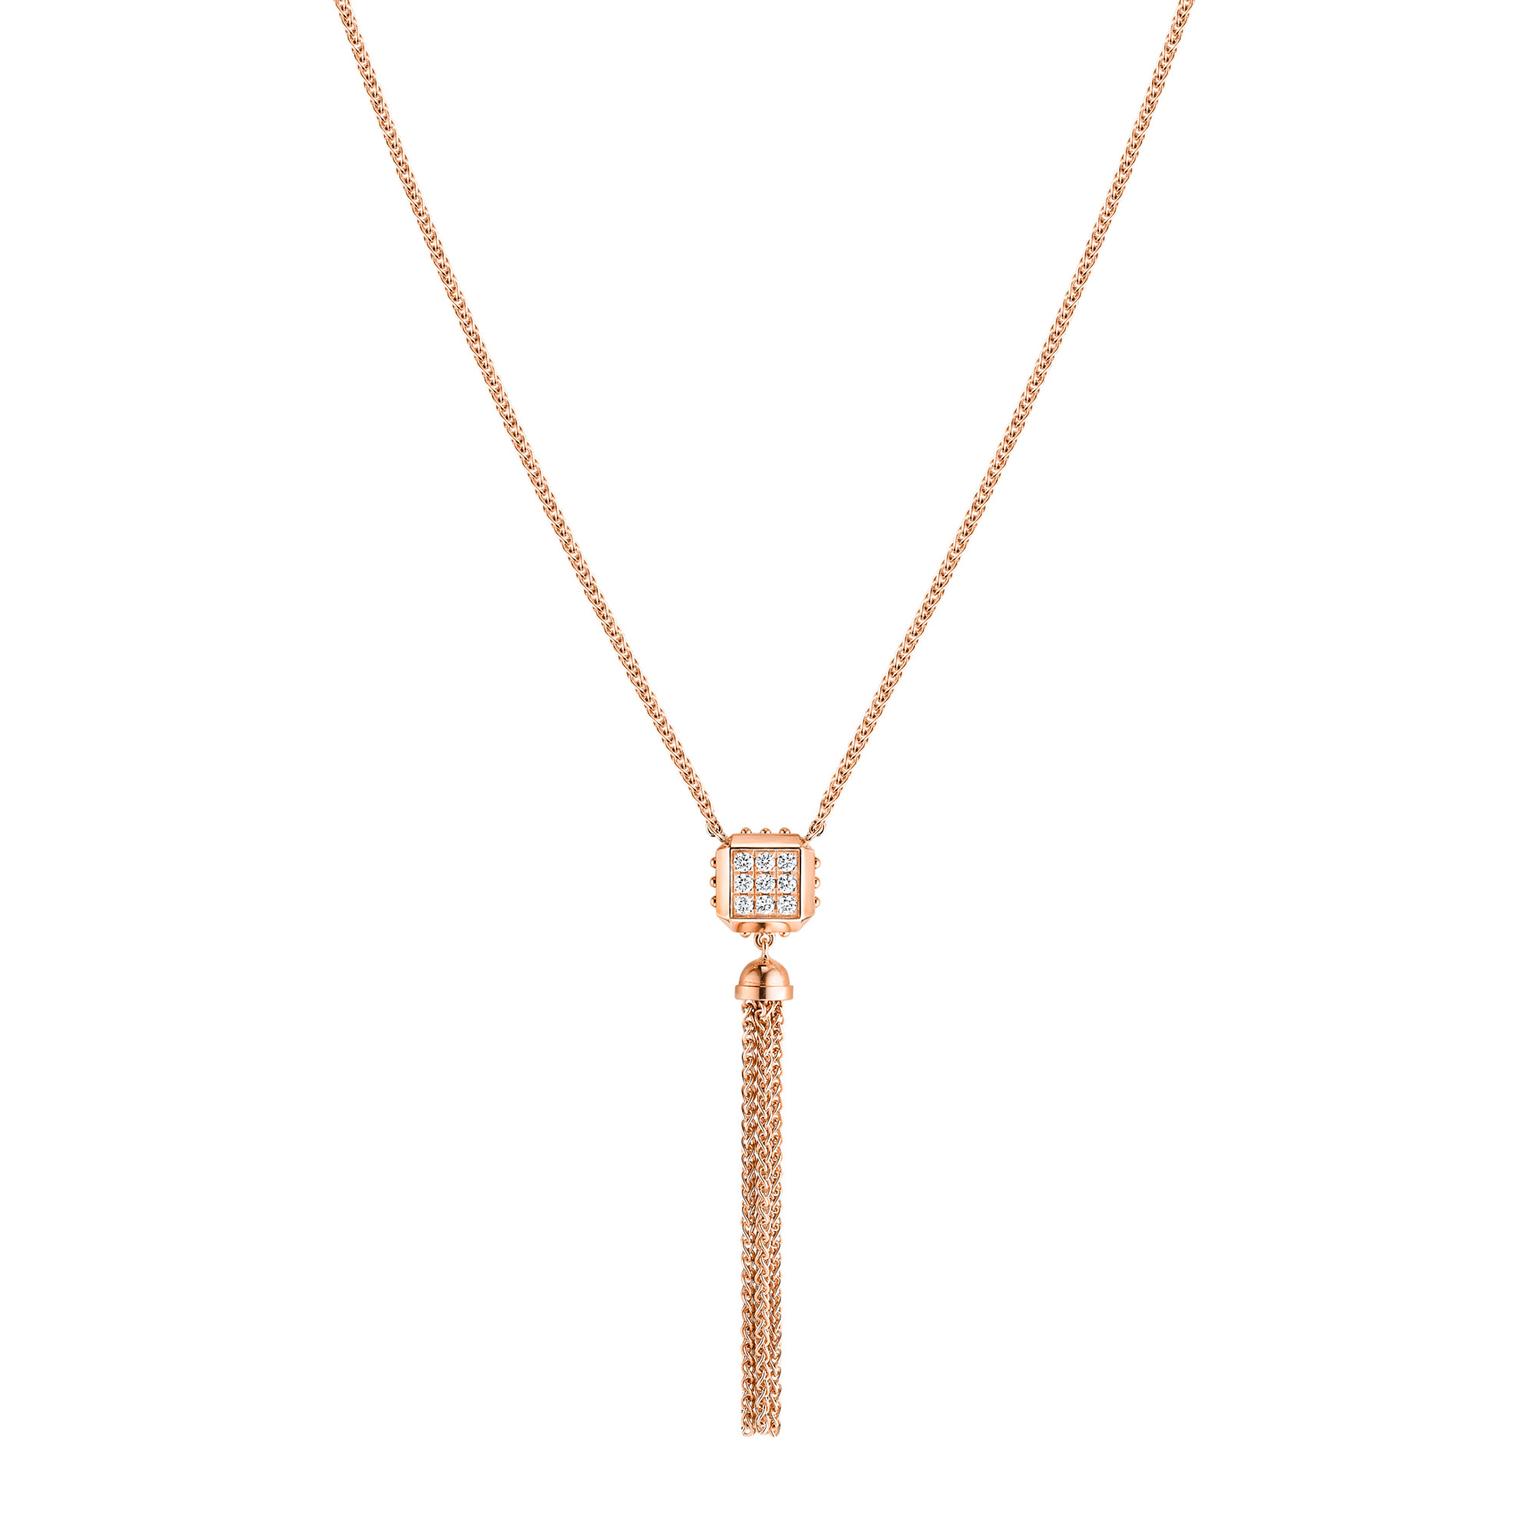 Louis Vuitton Eraser Necklace